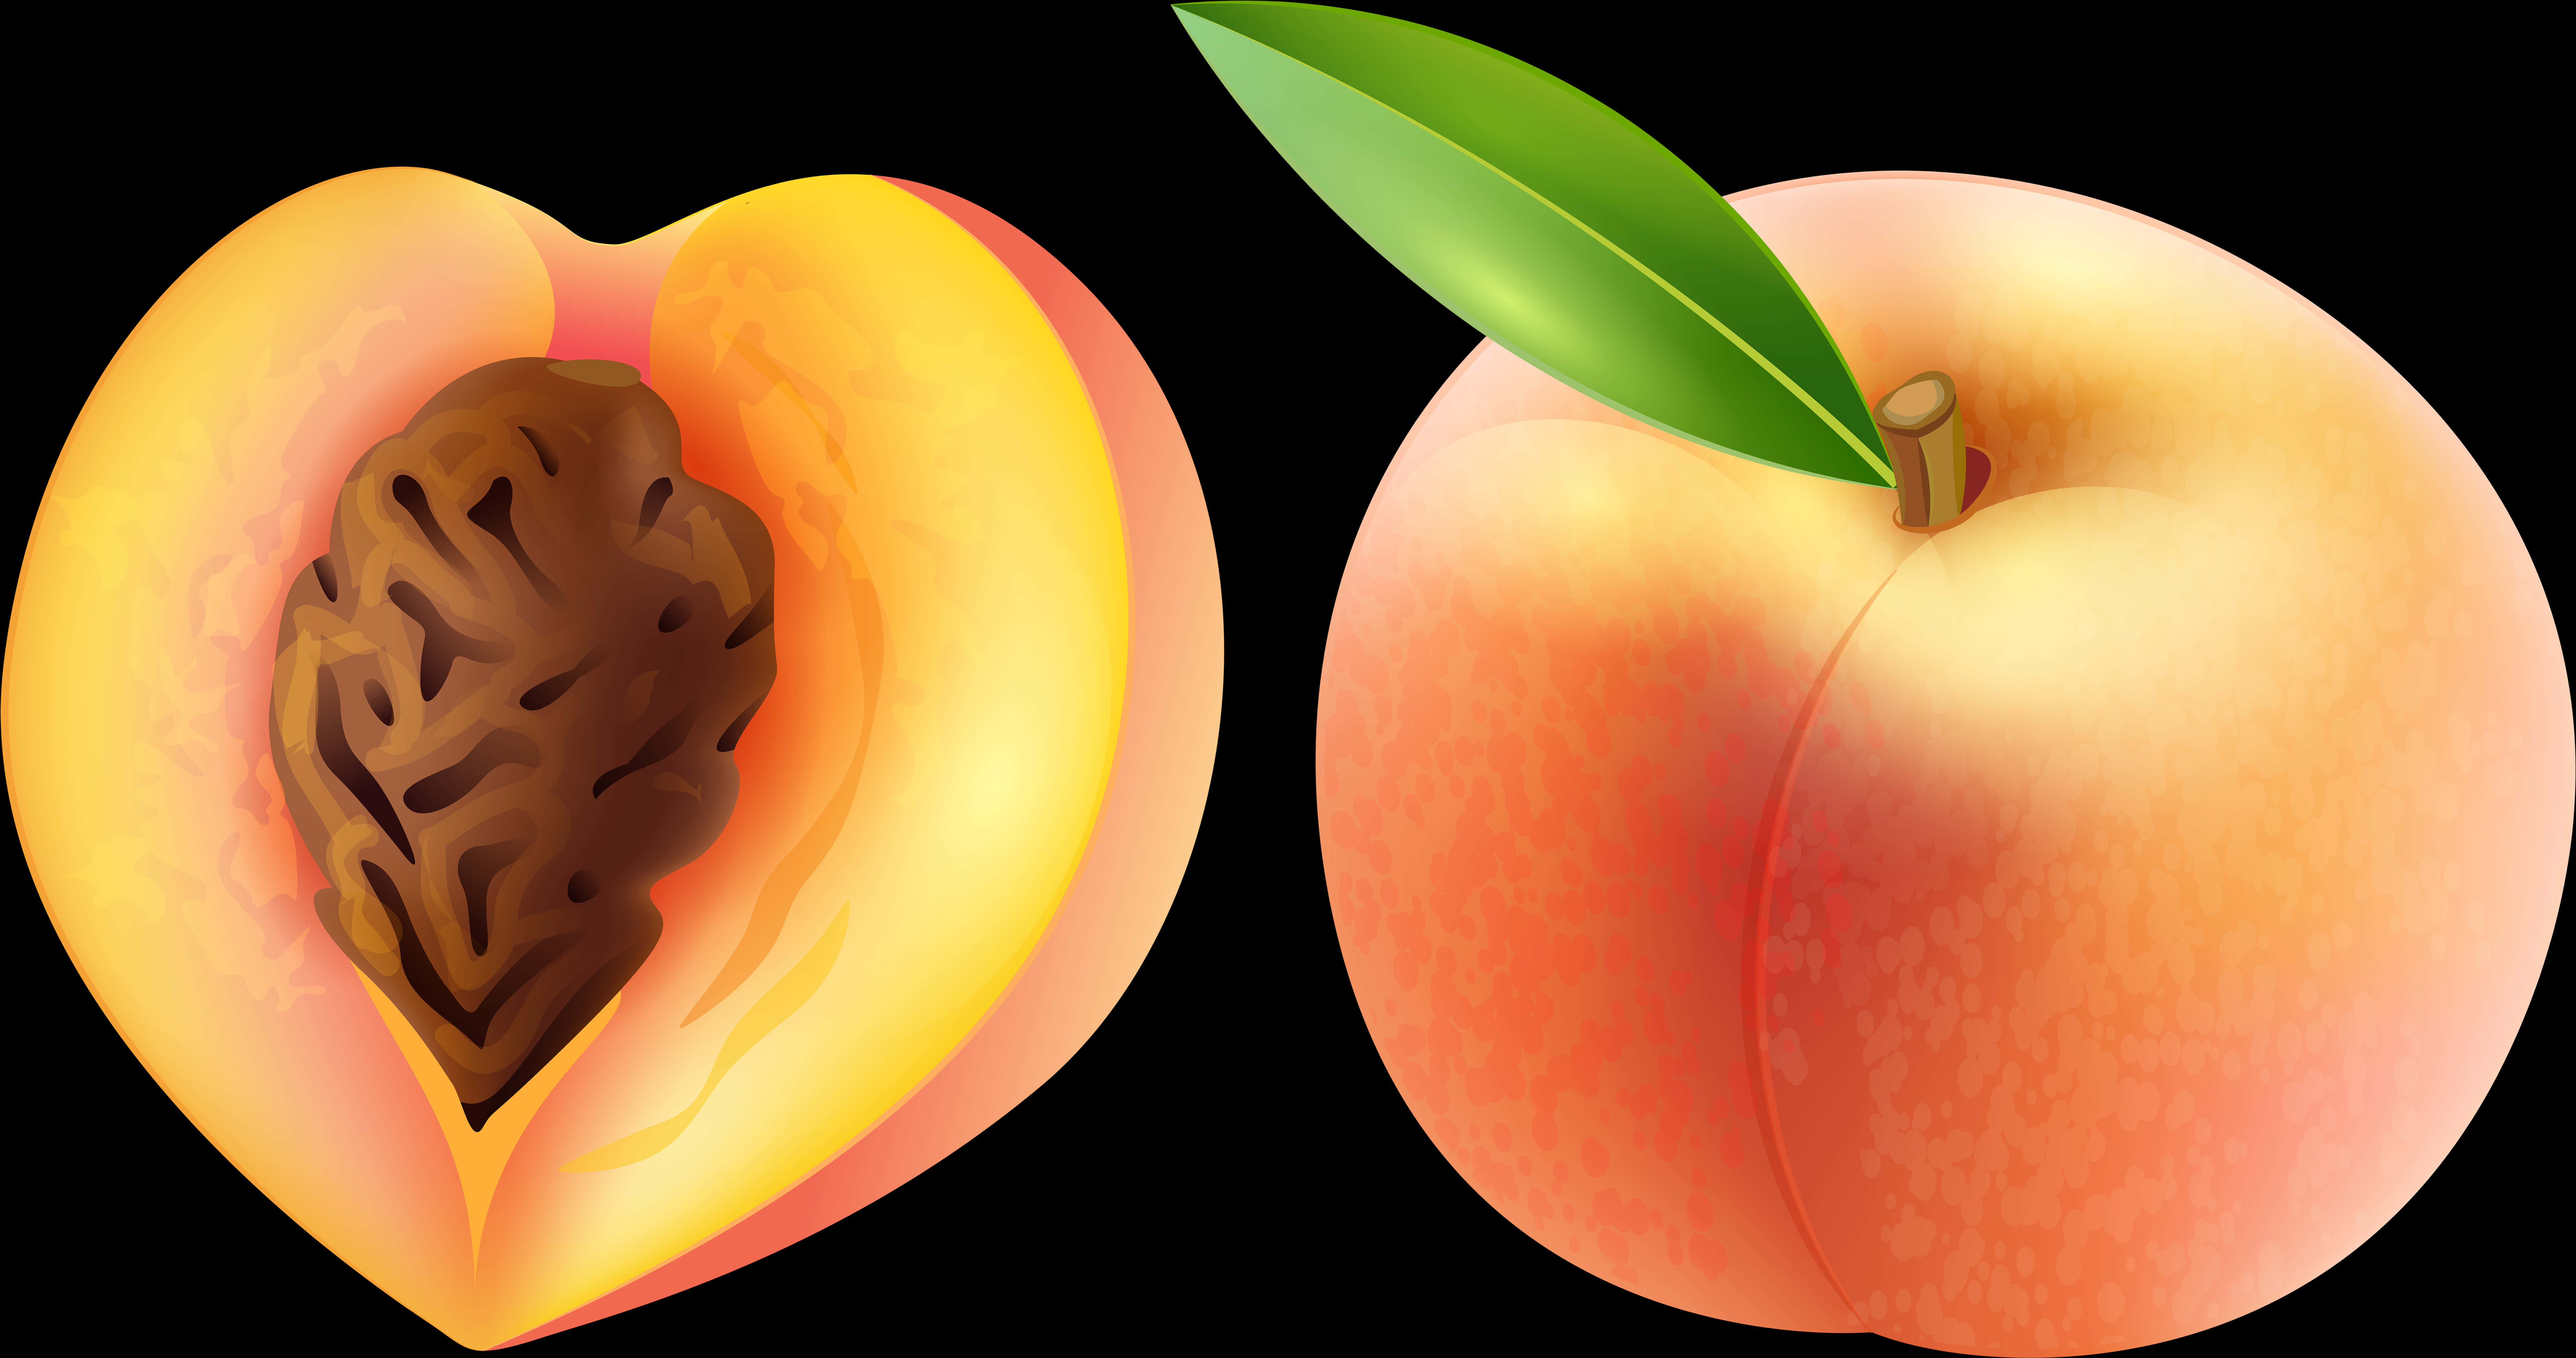 Wholeand Half Peach Illustration